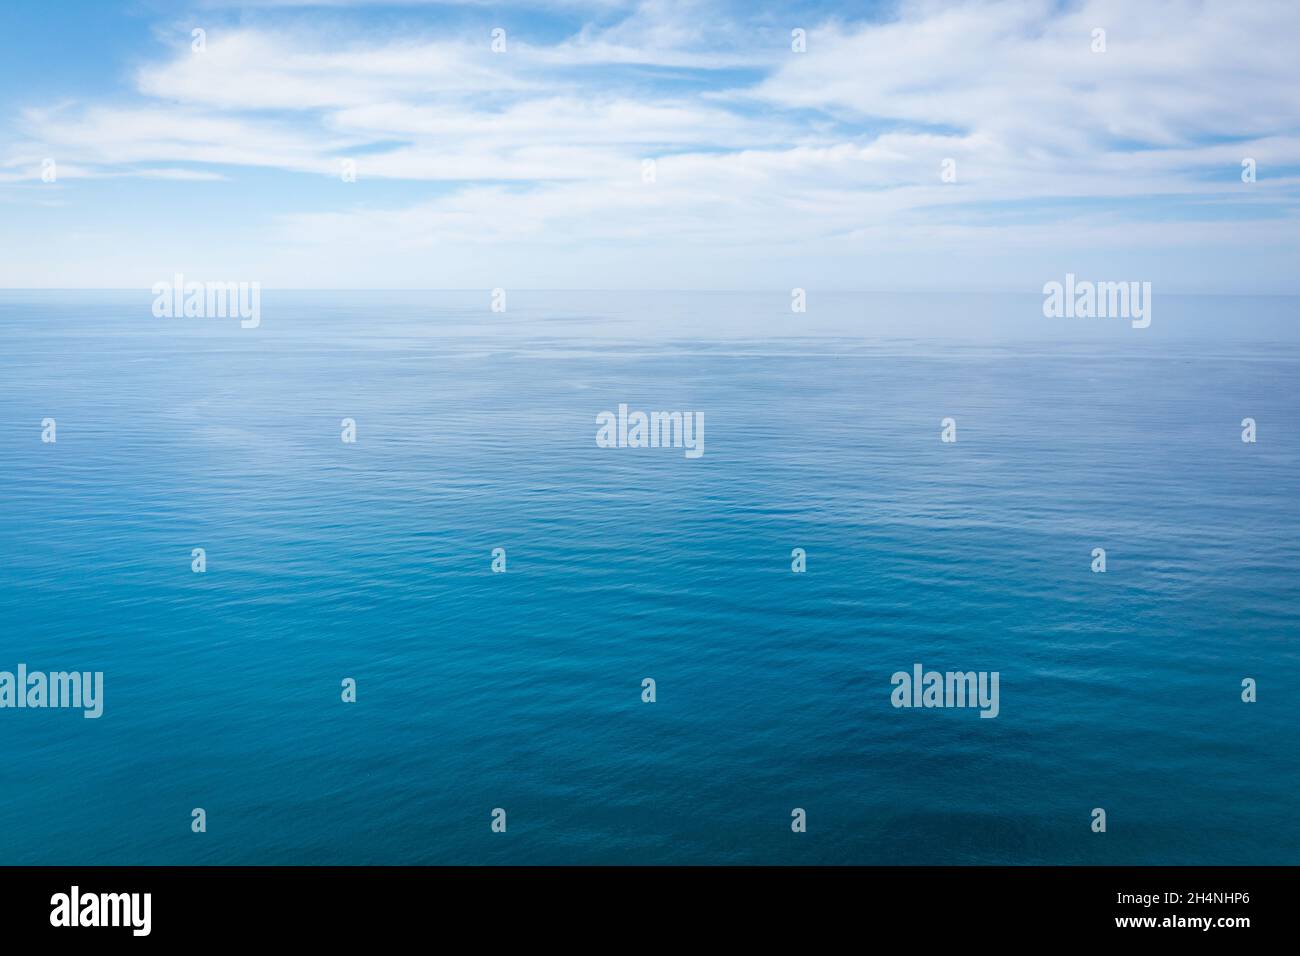 Nahaufnahme des ruhigen, blauen Meerwassers mit Tageslicht und Wolken. Abstrakte Hintergrundtextur. Hochwertige Fotos Stockfoto